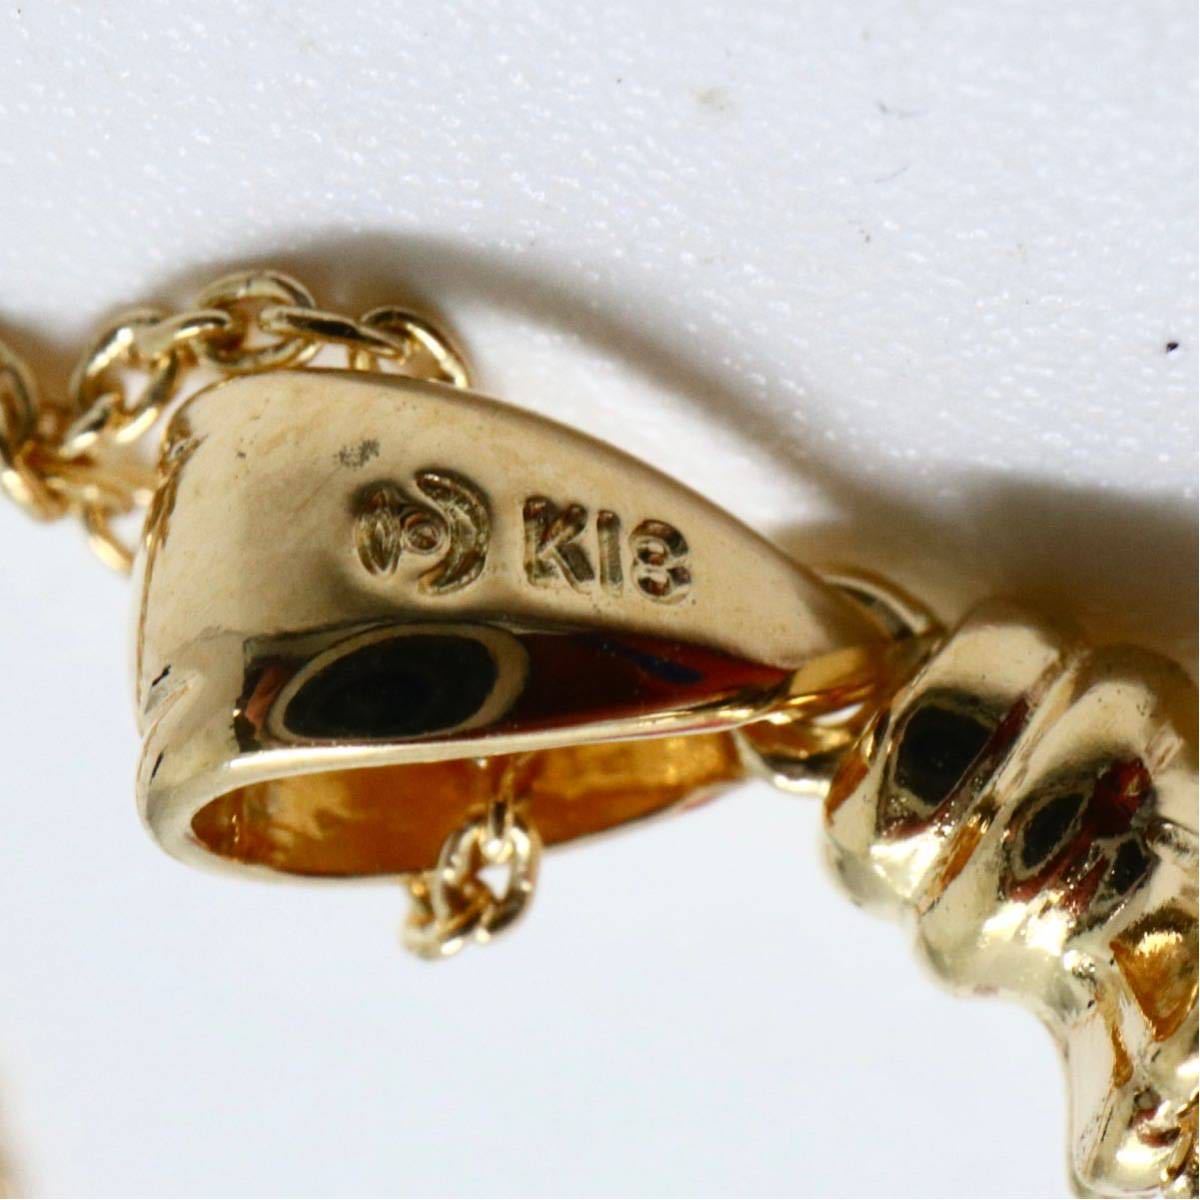 TASAKI(田崎真珠)《K18アコヤ本真珠ネックレス》F 約8.0mm珠 約5.4g 約49cm pearl necklace jewelry EC4/EC7_画像8